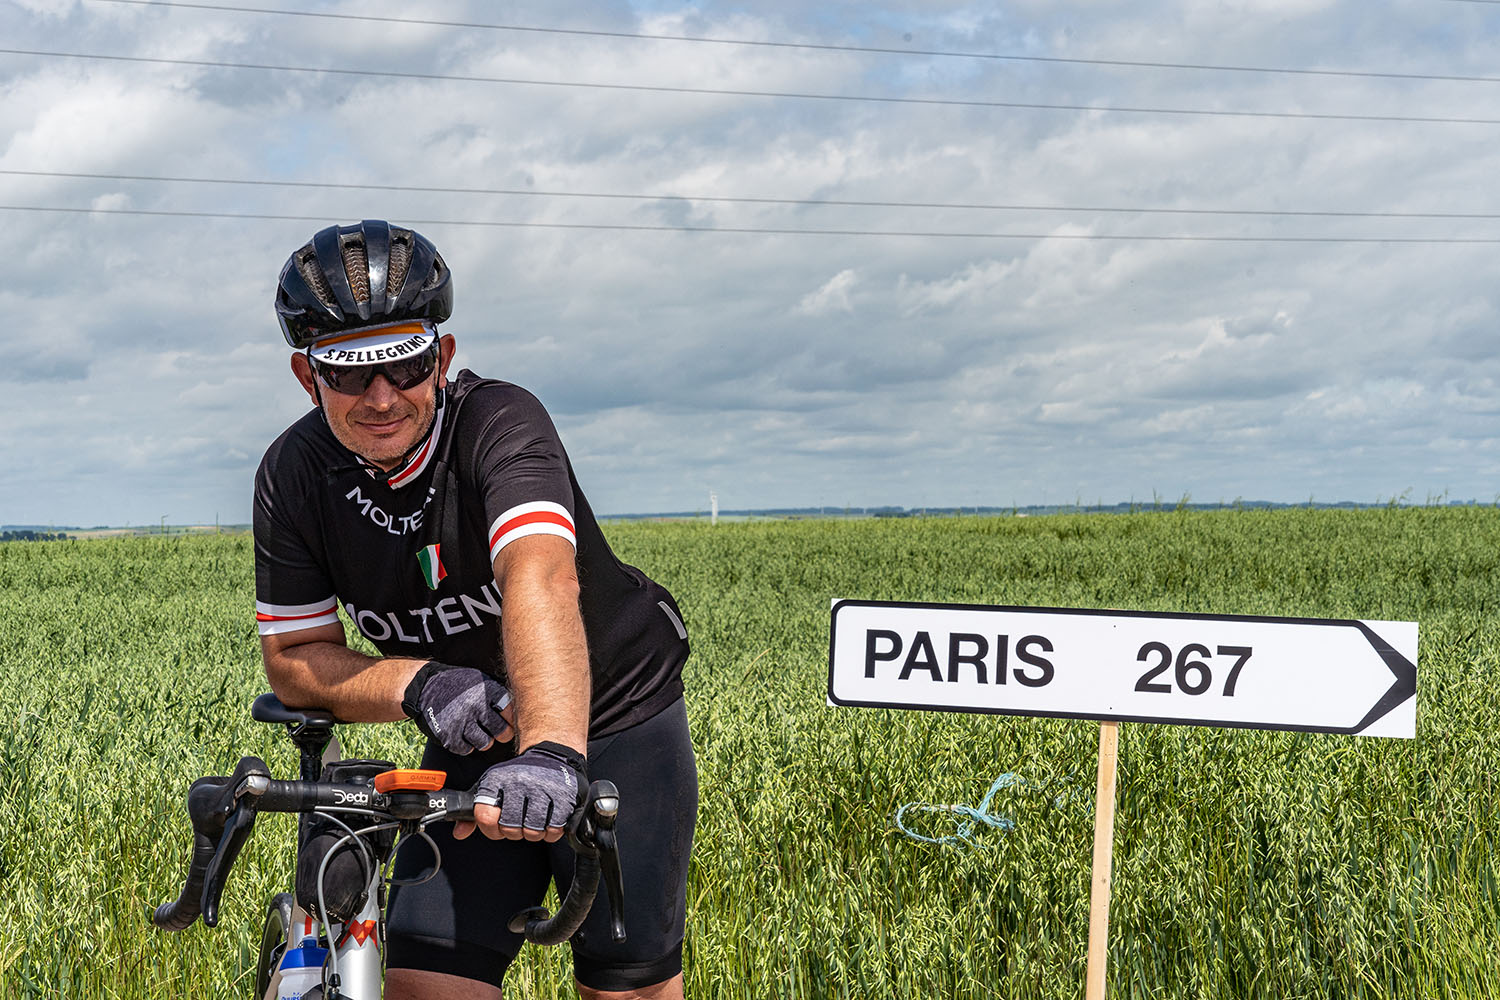 Road to Paris fietser staat naast bord paris 267 kilometer